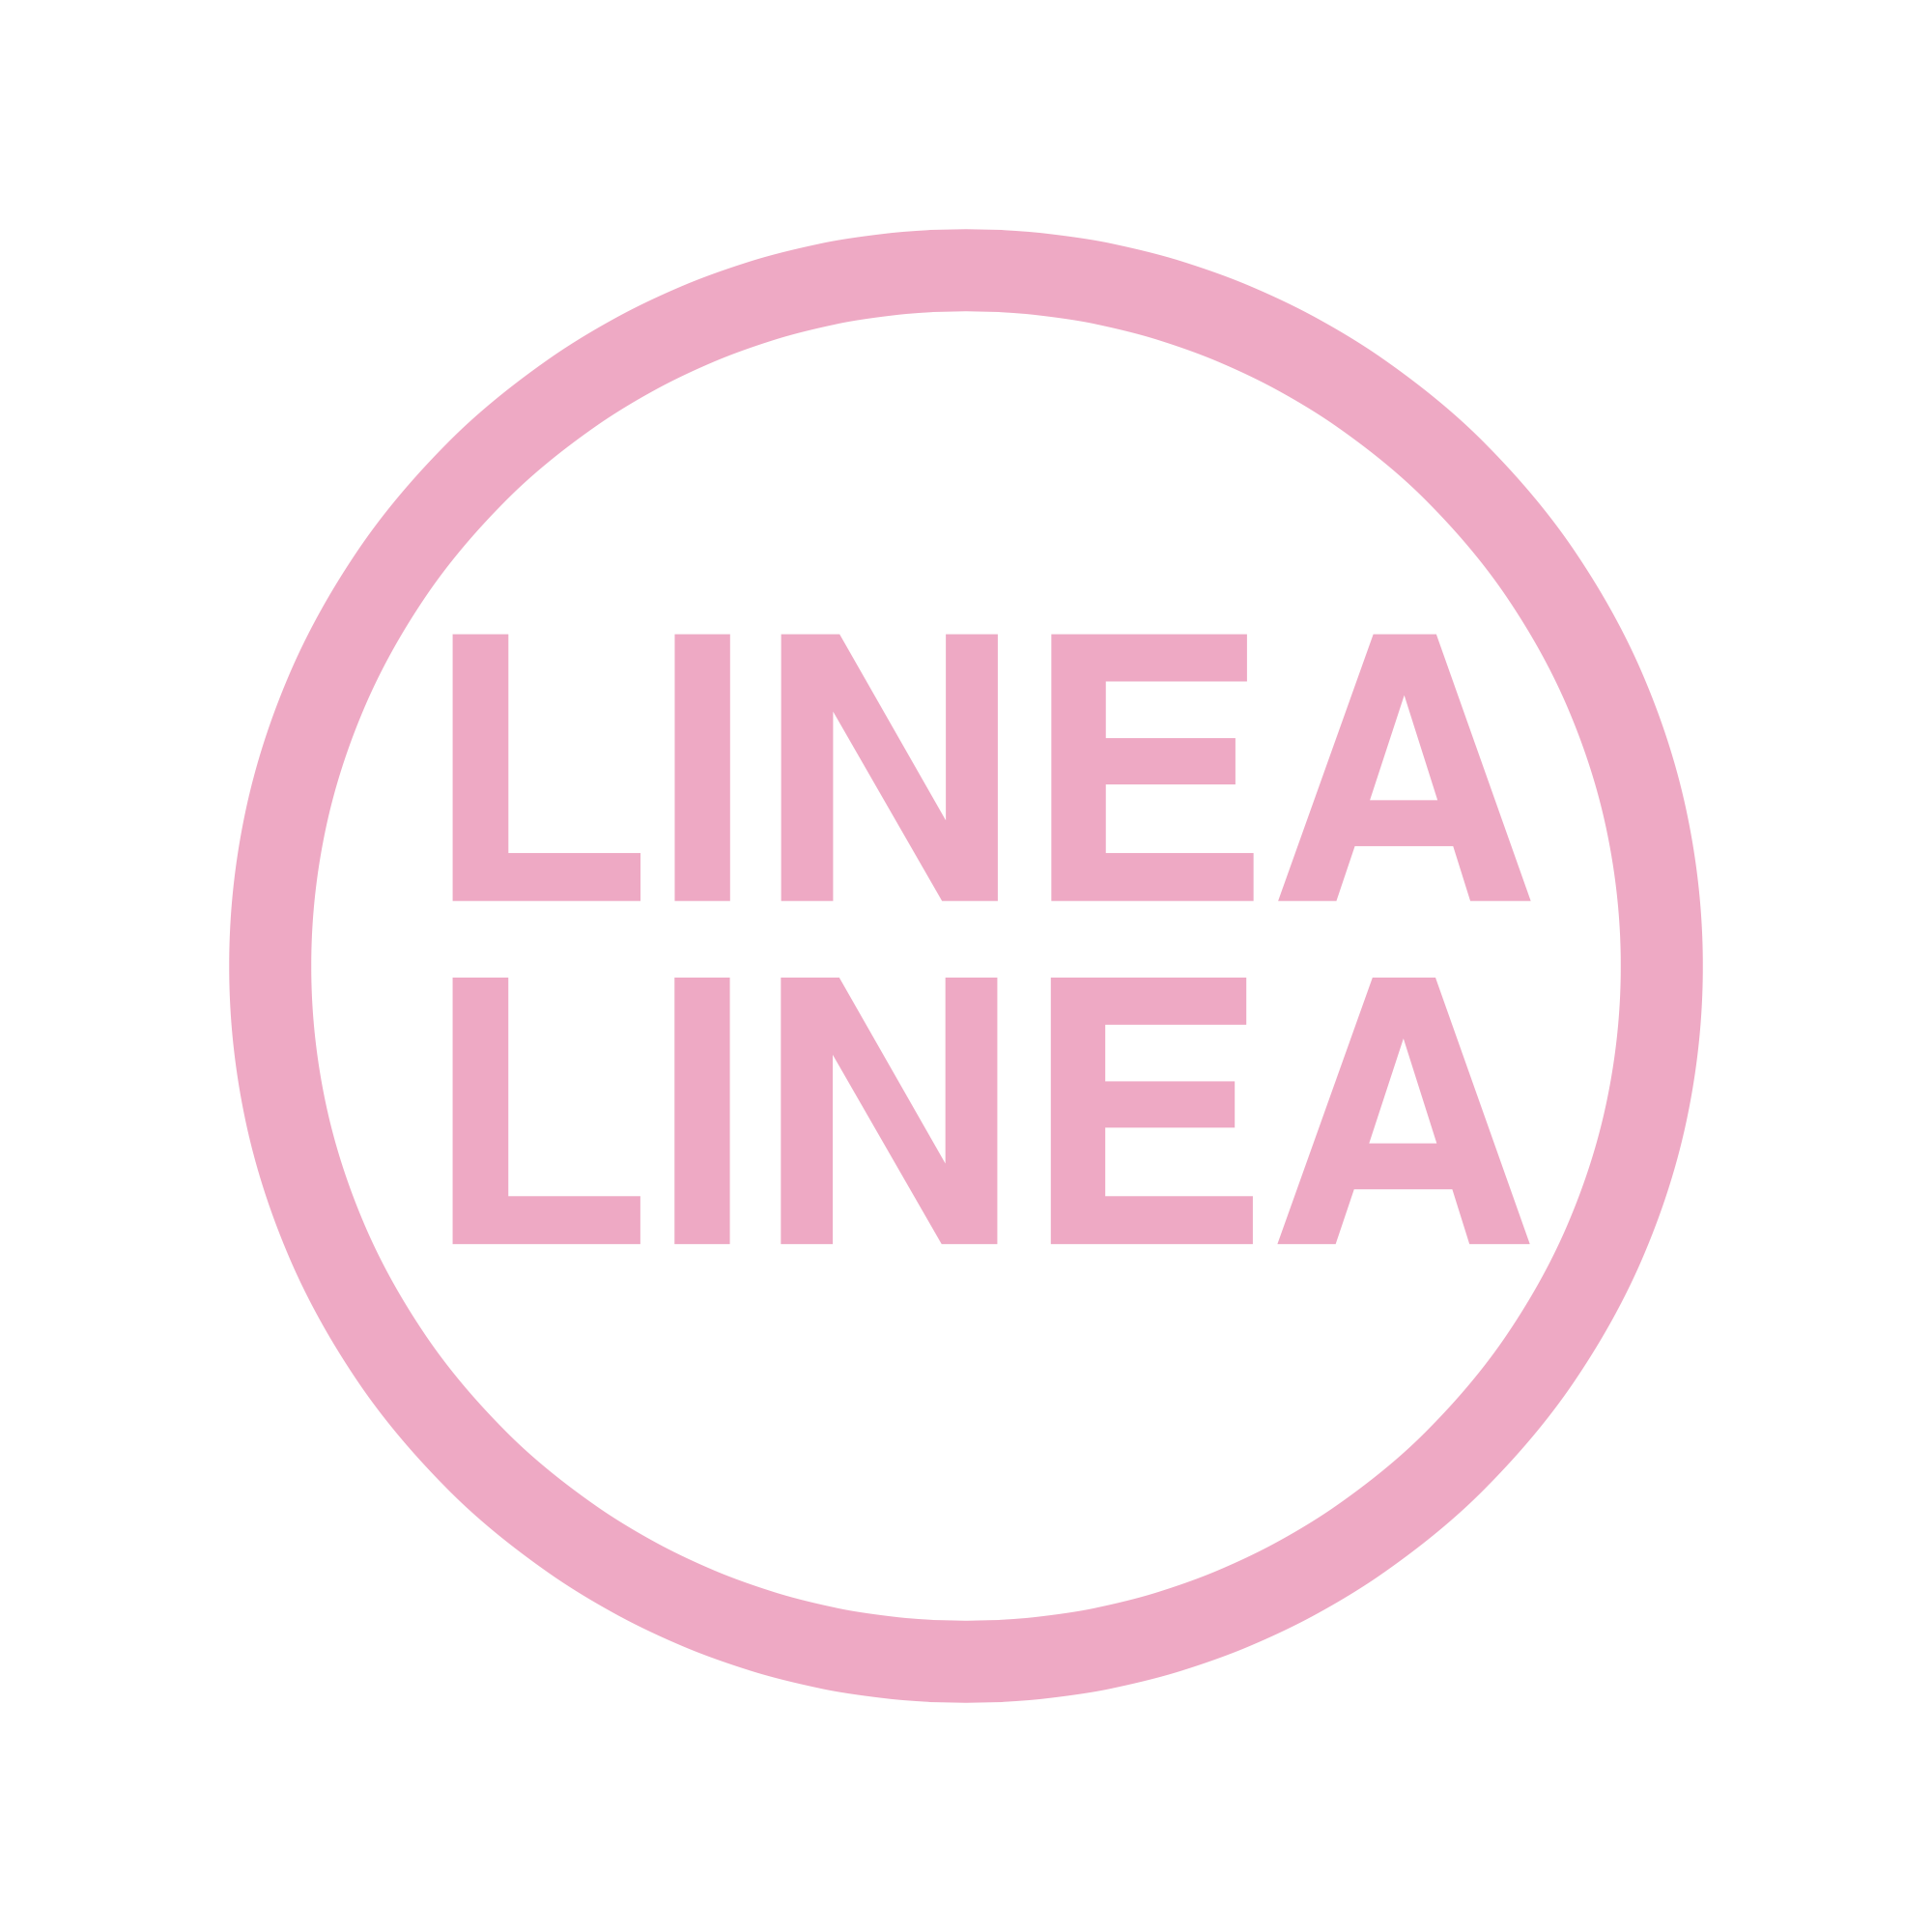 Linea Linea